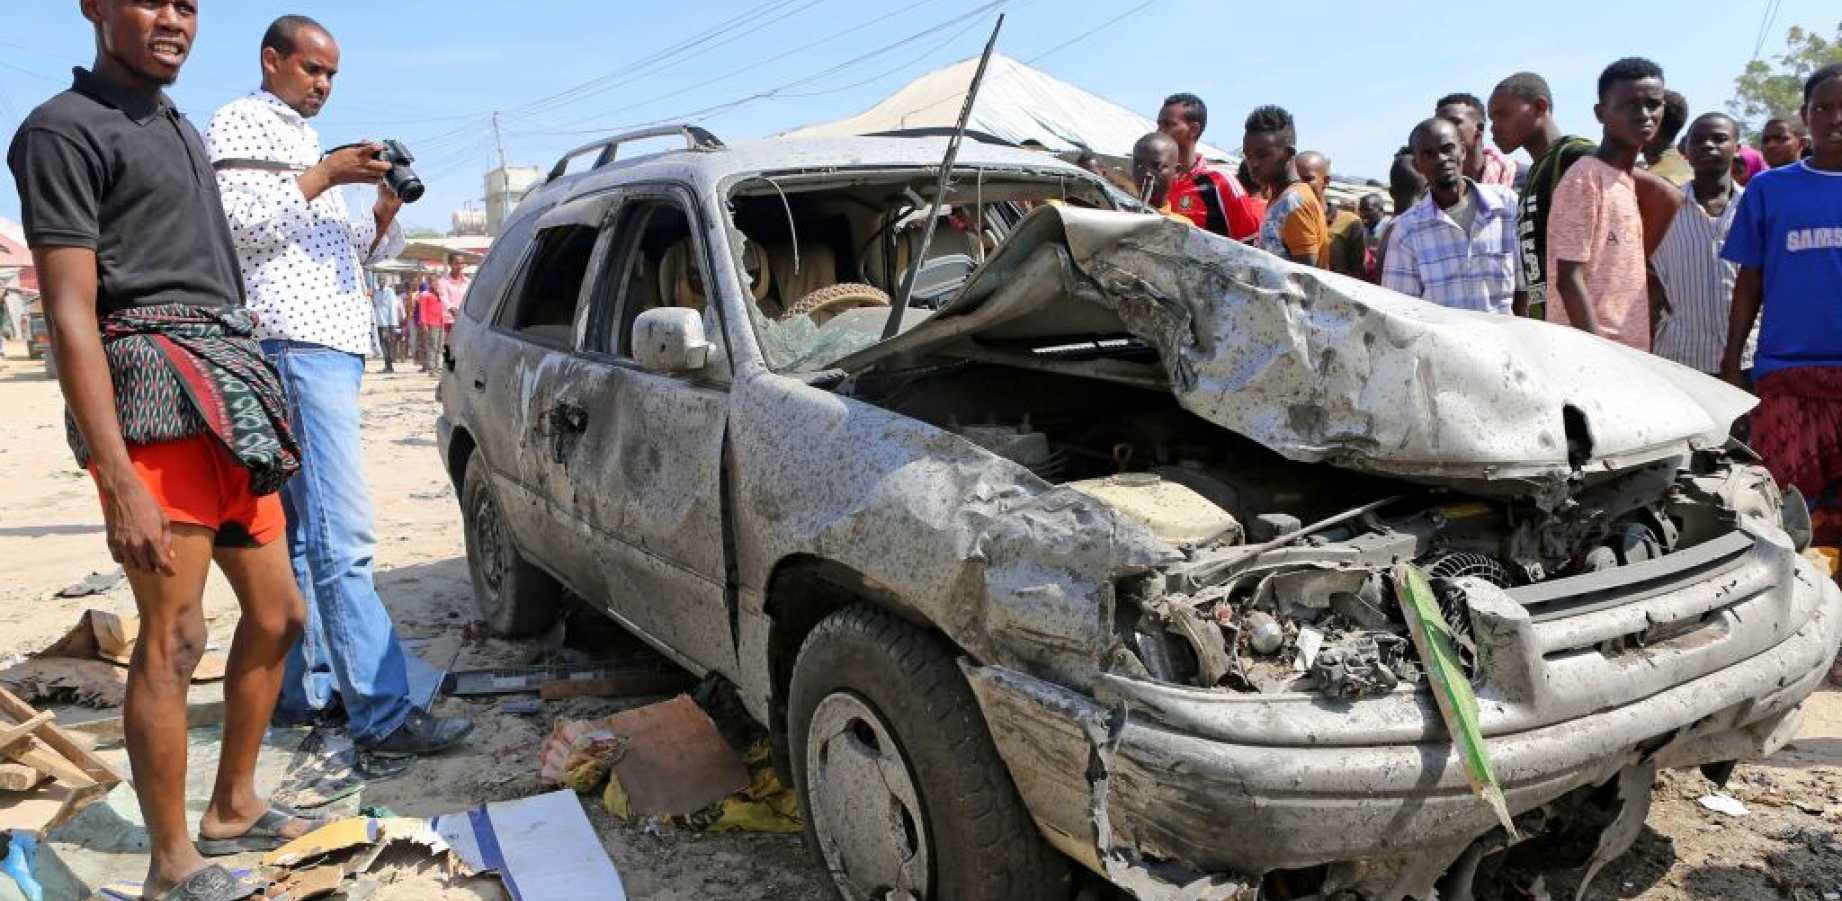 30 killed in car bomb attack in Somalia